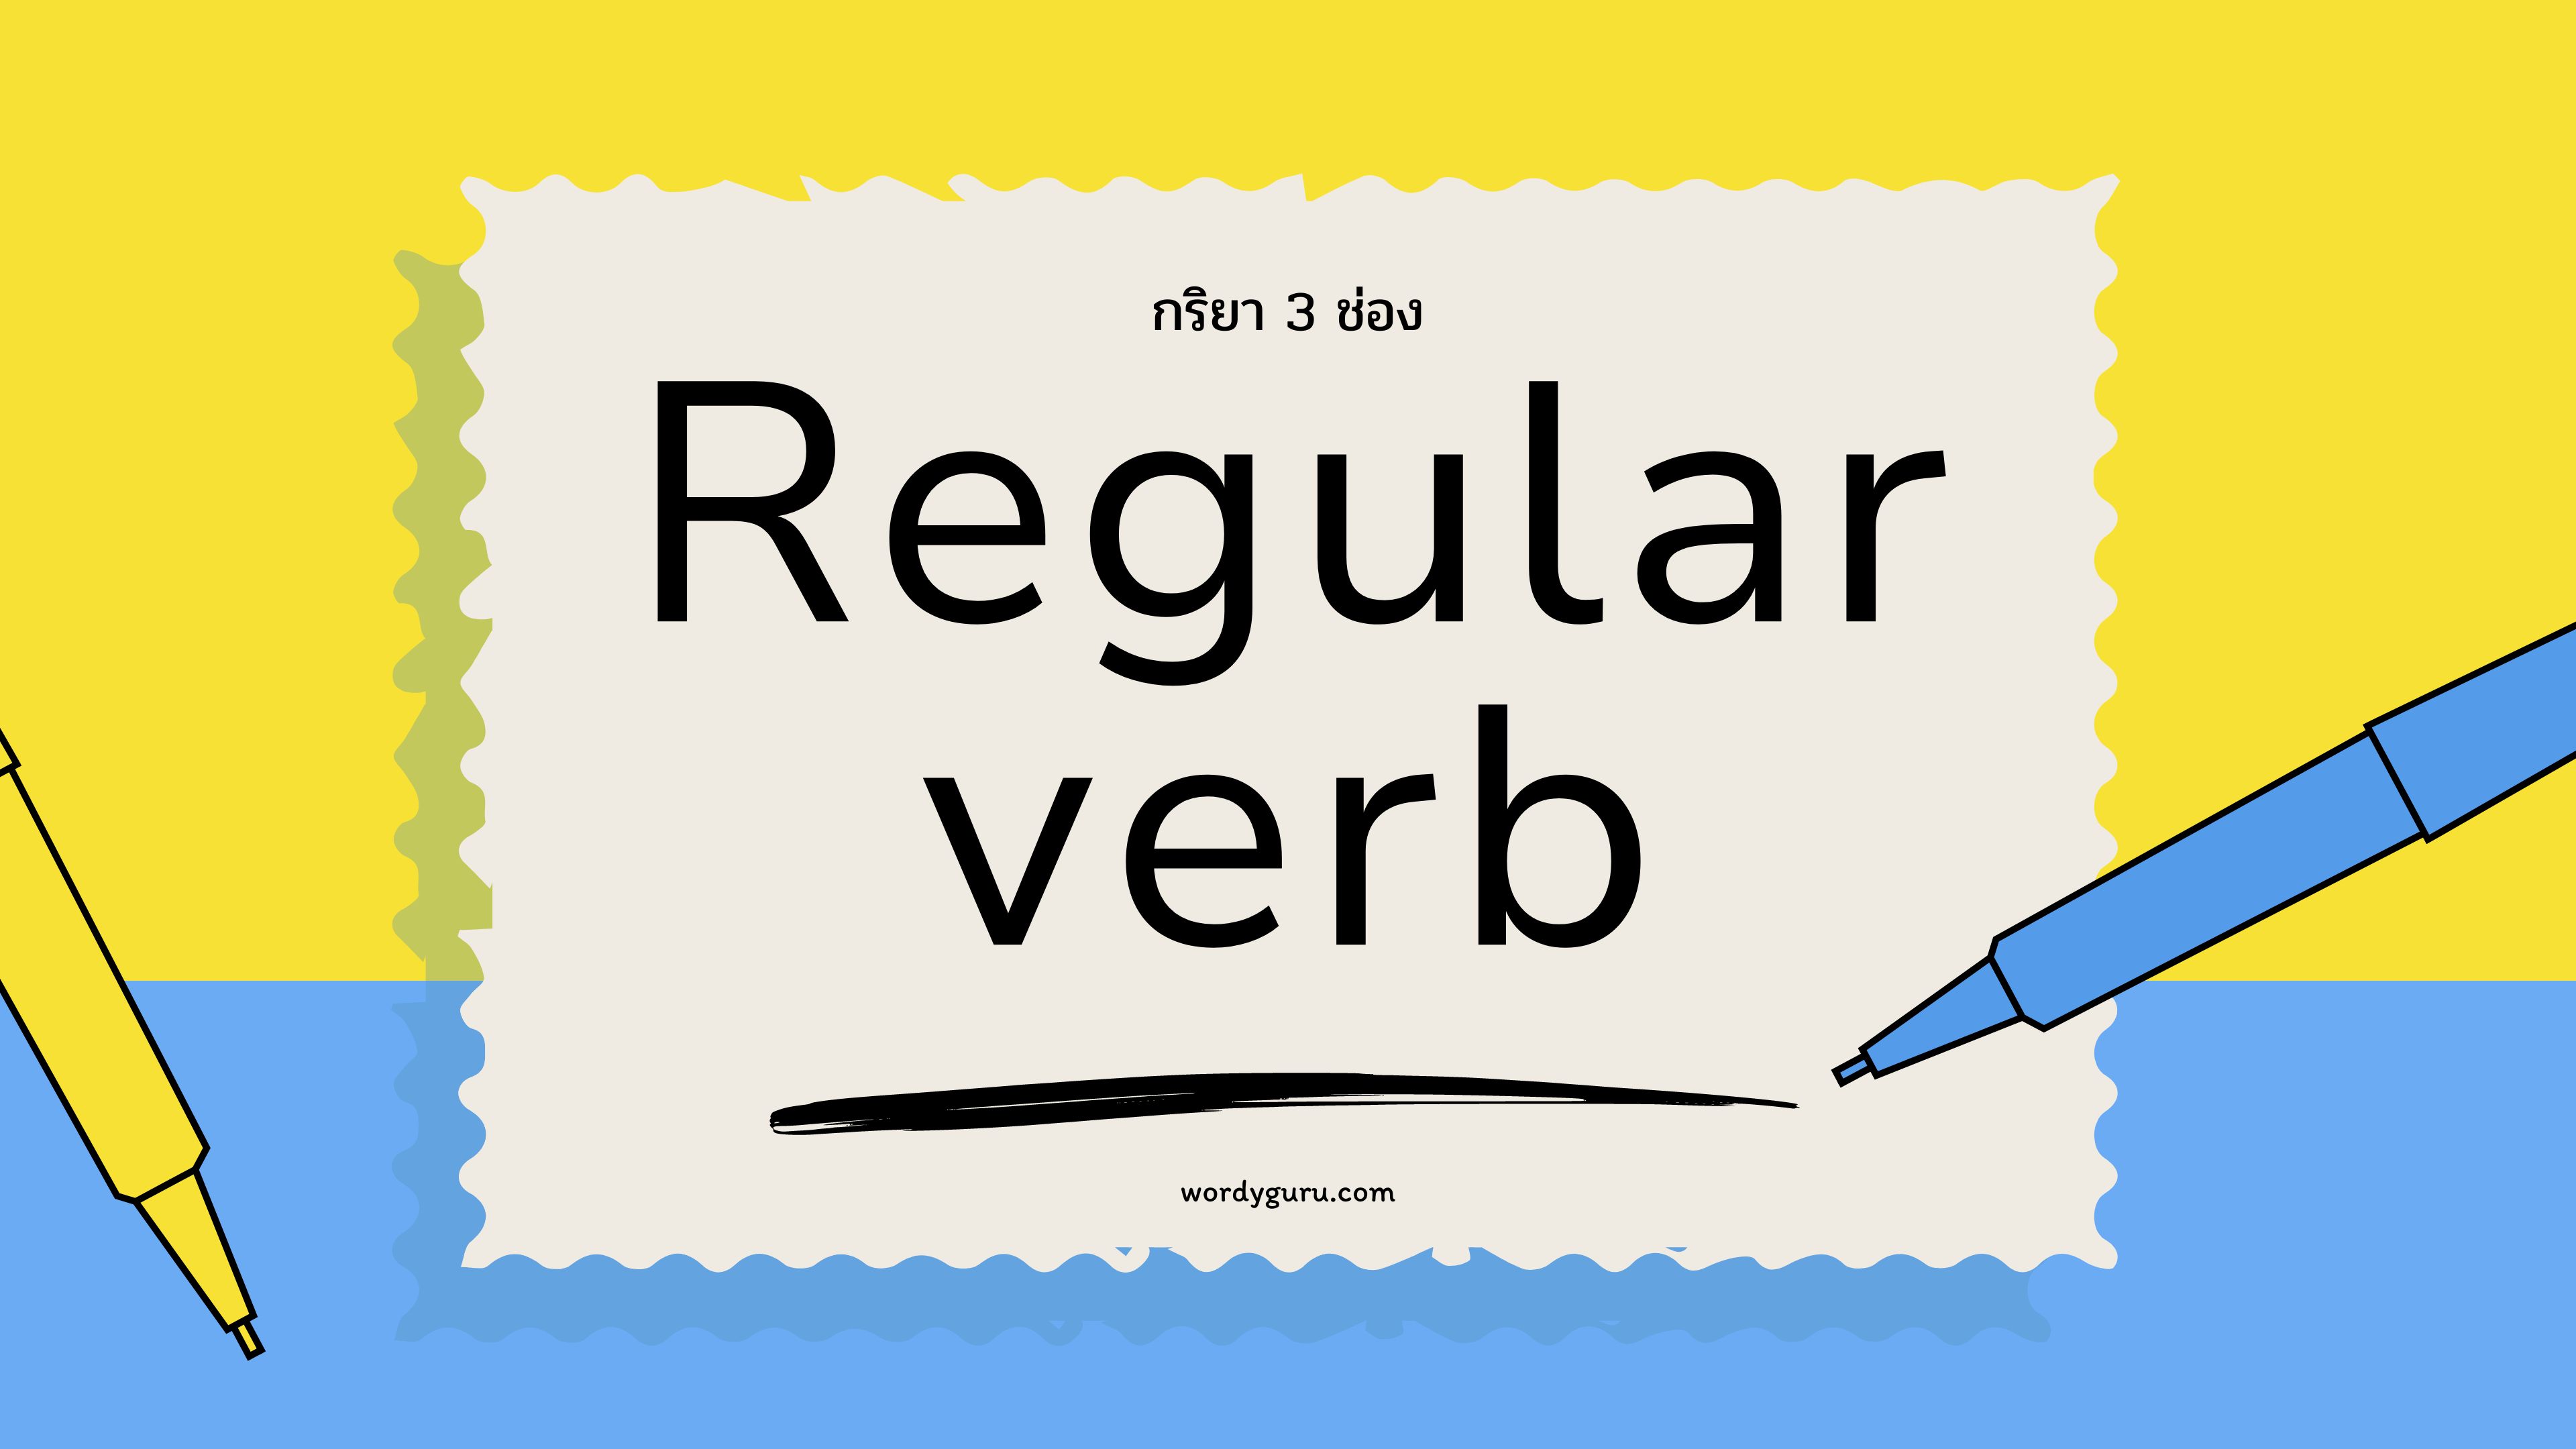 สรุป Regular Verbs ที่ใช้บ่อยที่สุดในภาษาอังกฤษ และวิธีที่ง่ายที่สุดในการเรียนรู้ตาราง Regular Verbs ที่ใช้งานบ่อย 100 คำกริยา พร้อมคำแปล